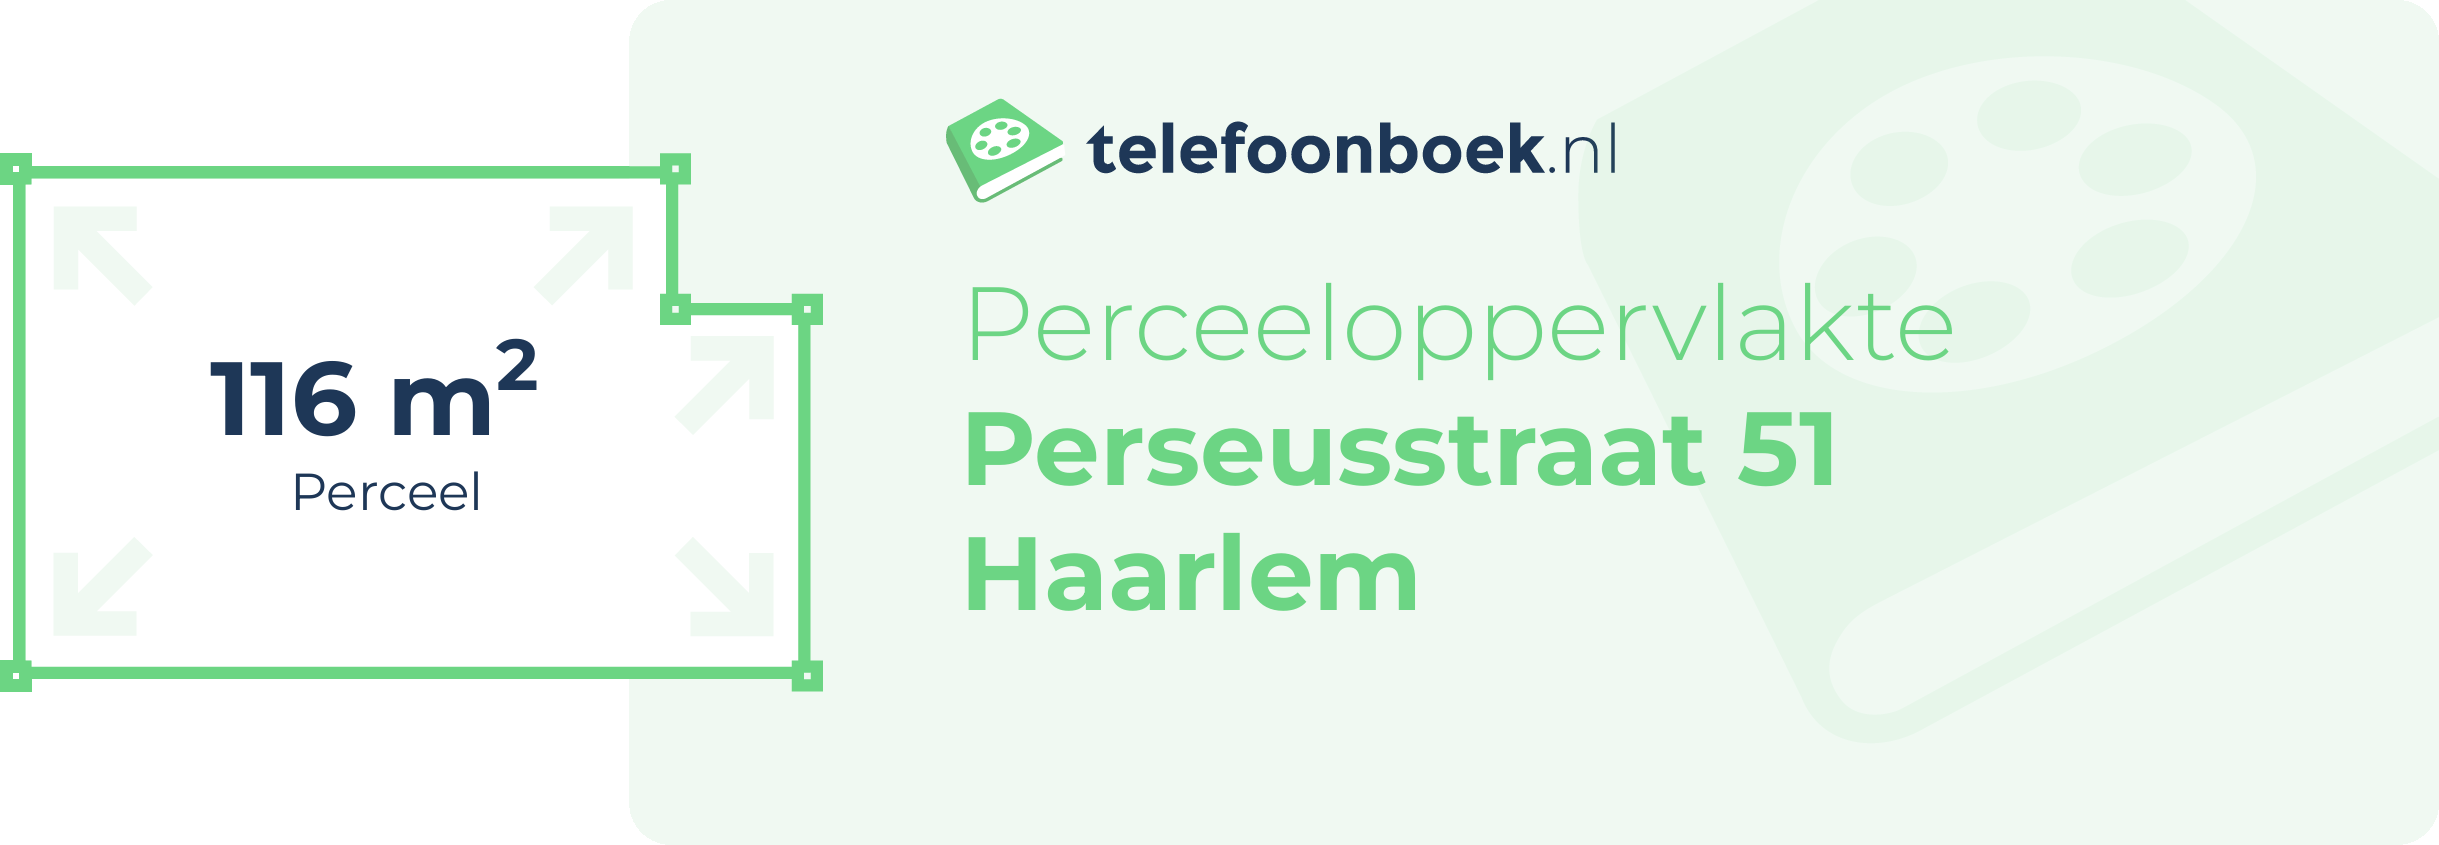 Perceeloppervlakte Perseusstraat 51 Haarlem